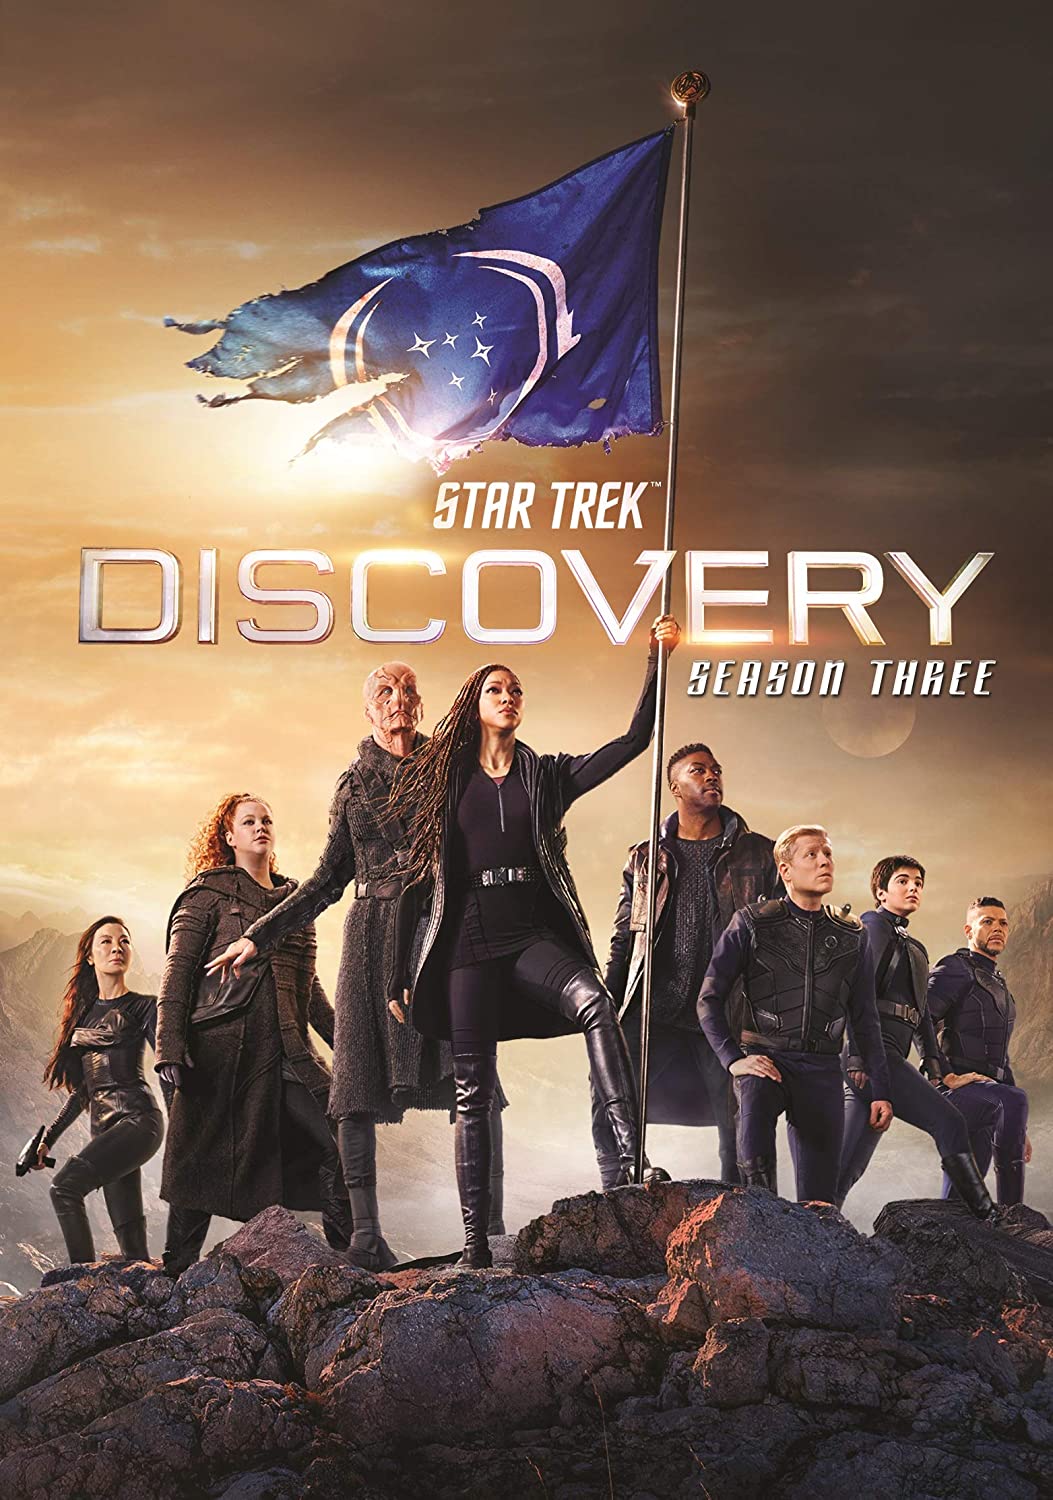 ดูหนังออนไลน์ Star Trek Discovery Season 3 EP11 สตาร์ เทรค ดิสคัฟเวอรี่ ซีซั่นที่ 3 ตอนที่ 11